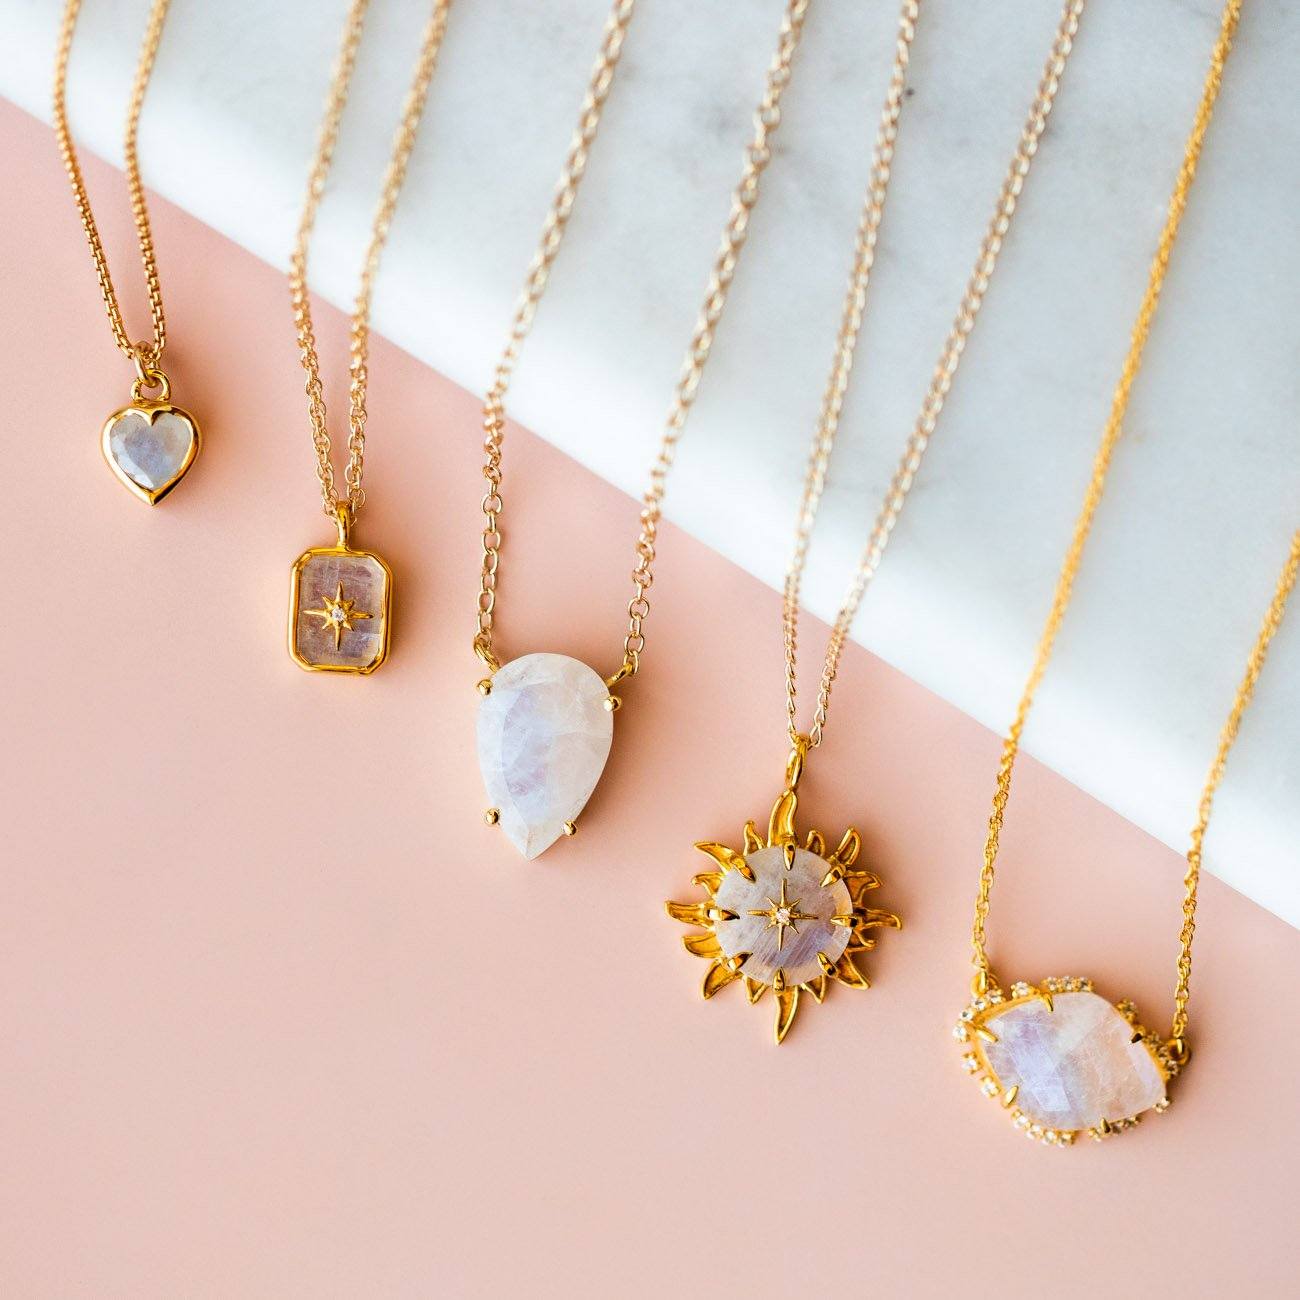 Rainbow Moonstone & Diamond Manifest Your Dreams Pendant Necklace necklaces La Kaiser 